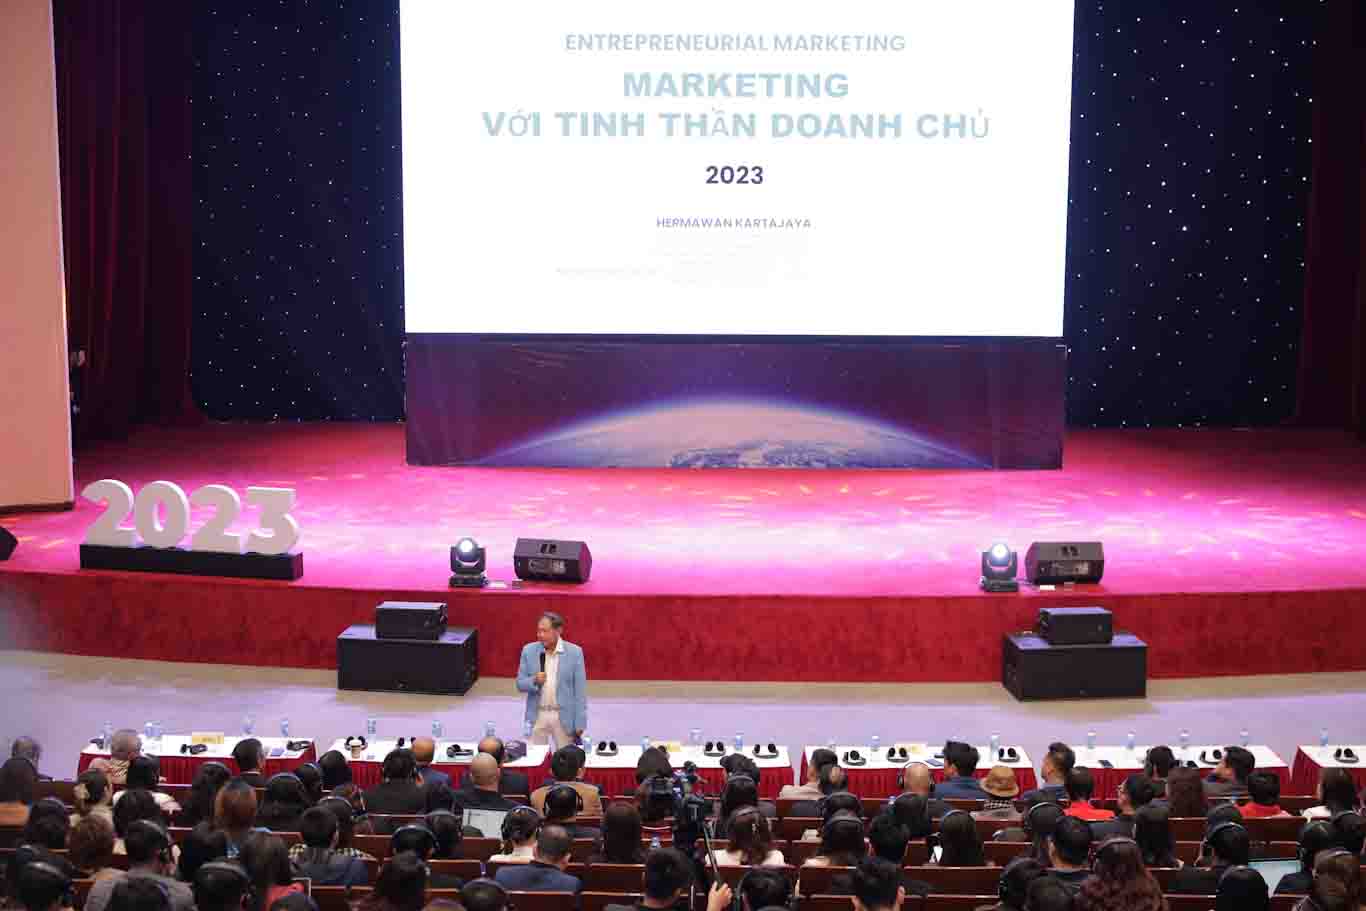 "Giải pháp đột phá marketing" với tư duy quản trị doanh nghiệp: MARKETING VỚI TINH THẦN DOANH CHỦ